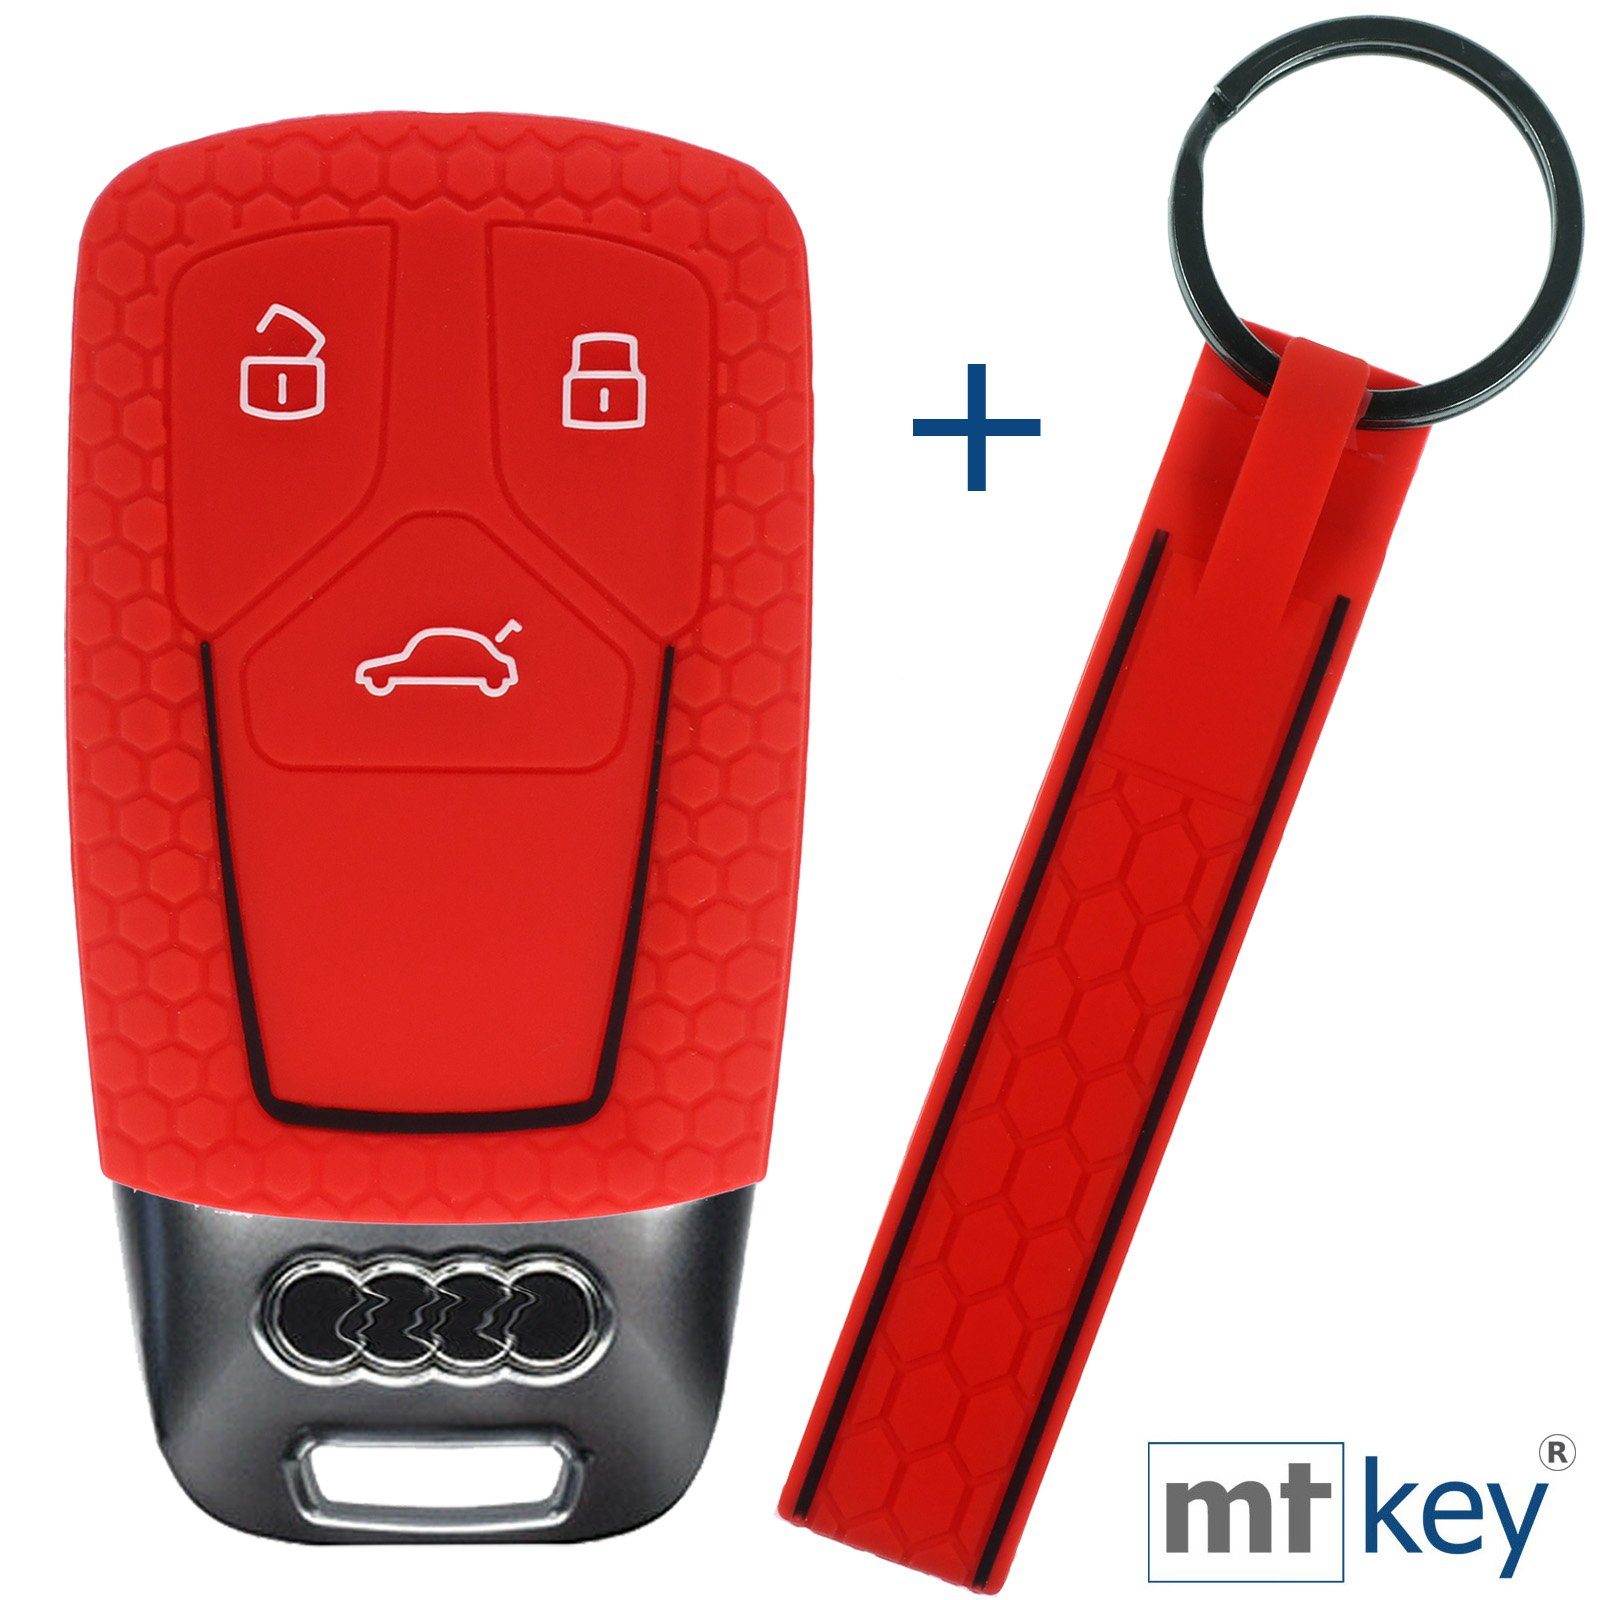 mt-key Schlüsseltasche Autoschlüssel Silikon Schutzhülle im Wabe Design Rot mit Schlüsselband, für Audi A4 A5 A6 A7 TT Q2 Q5 Q7 A8 Q8 3 Tasten KEYLESS SMARTKEY